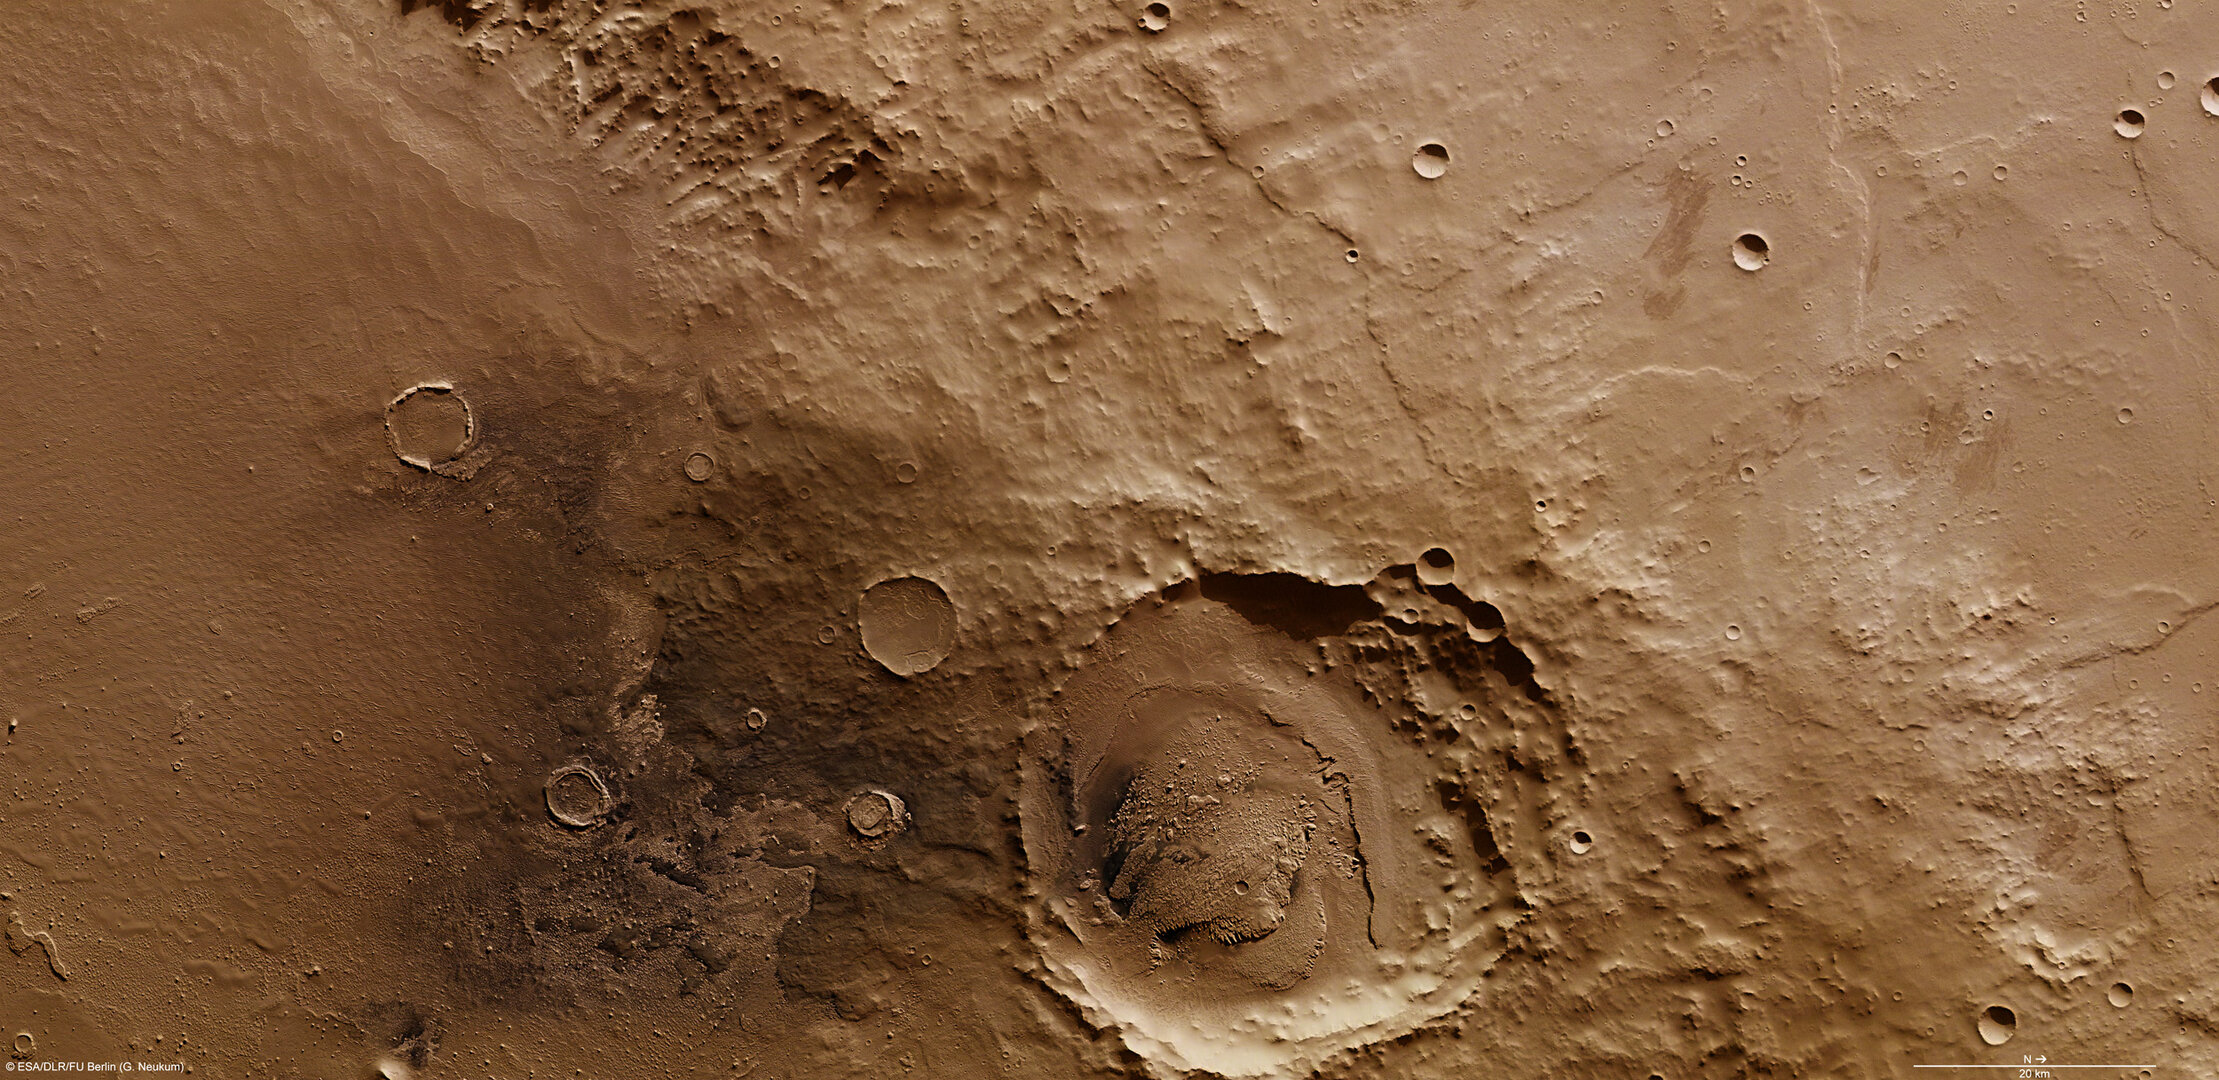 On the rim of Schiaparelli crater